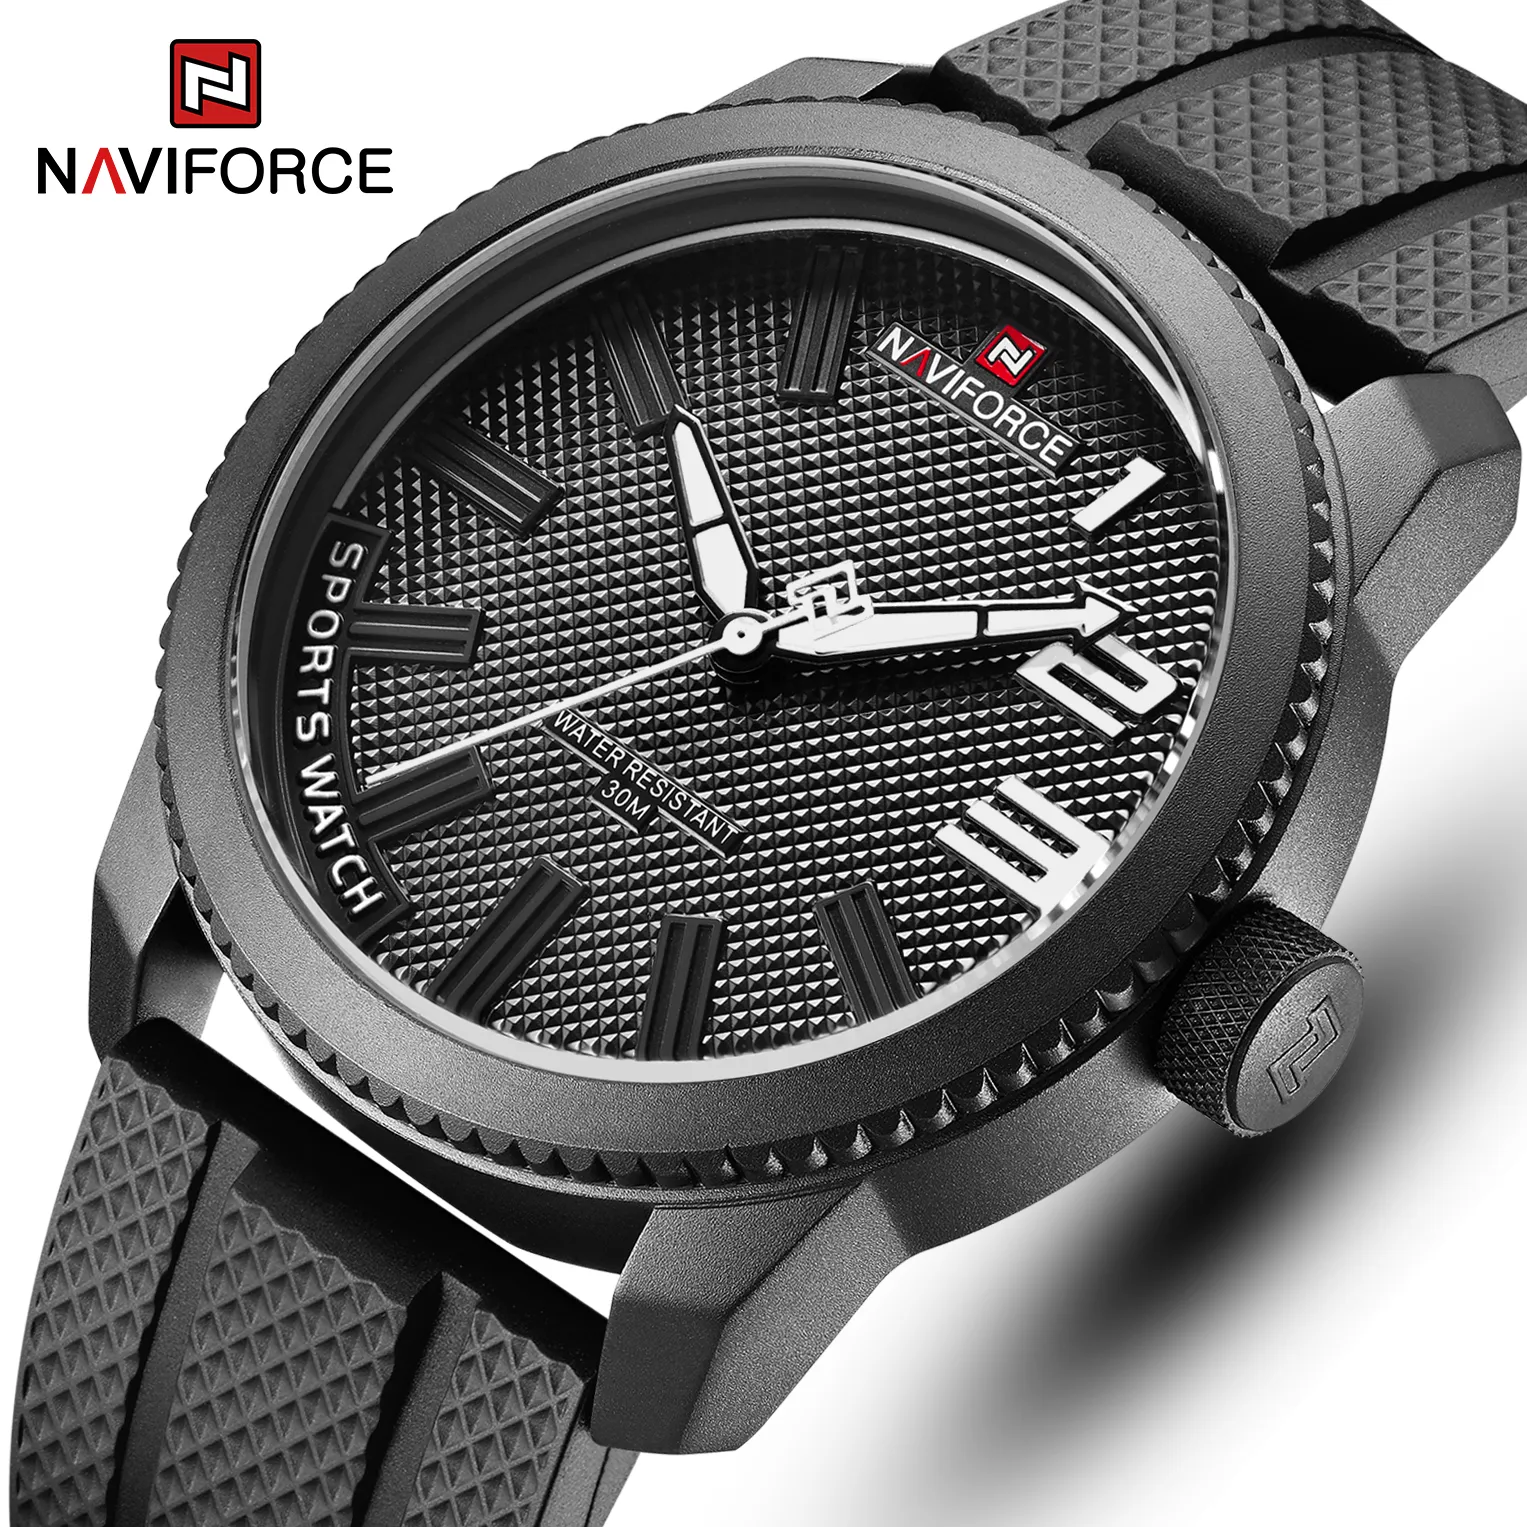 NAVIFORCE hommes montres à Quartz marque de luxe sport militaire Silicone étanche hommes montre mode horloge Relogio Masculino